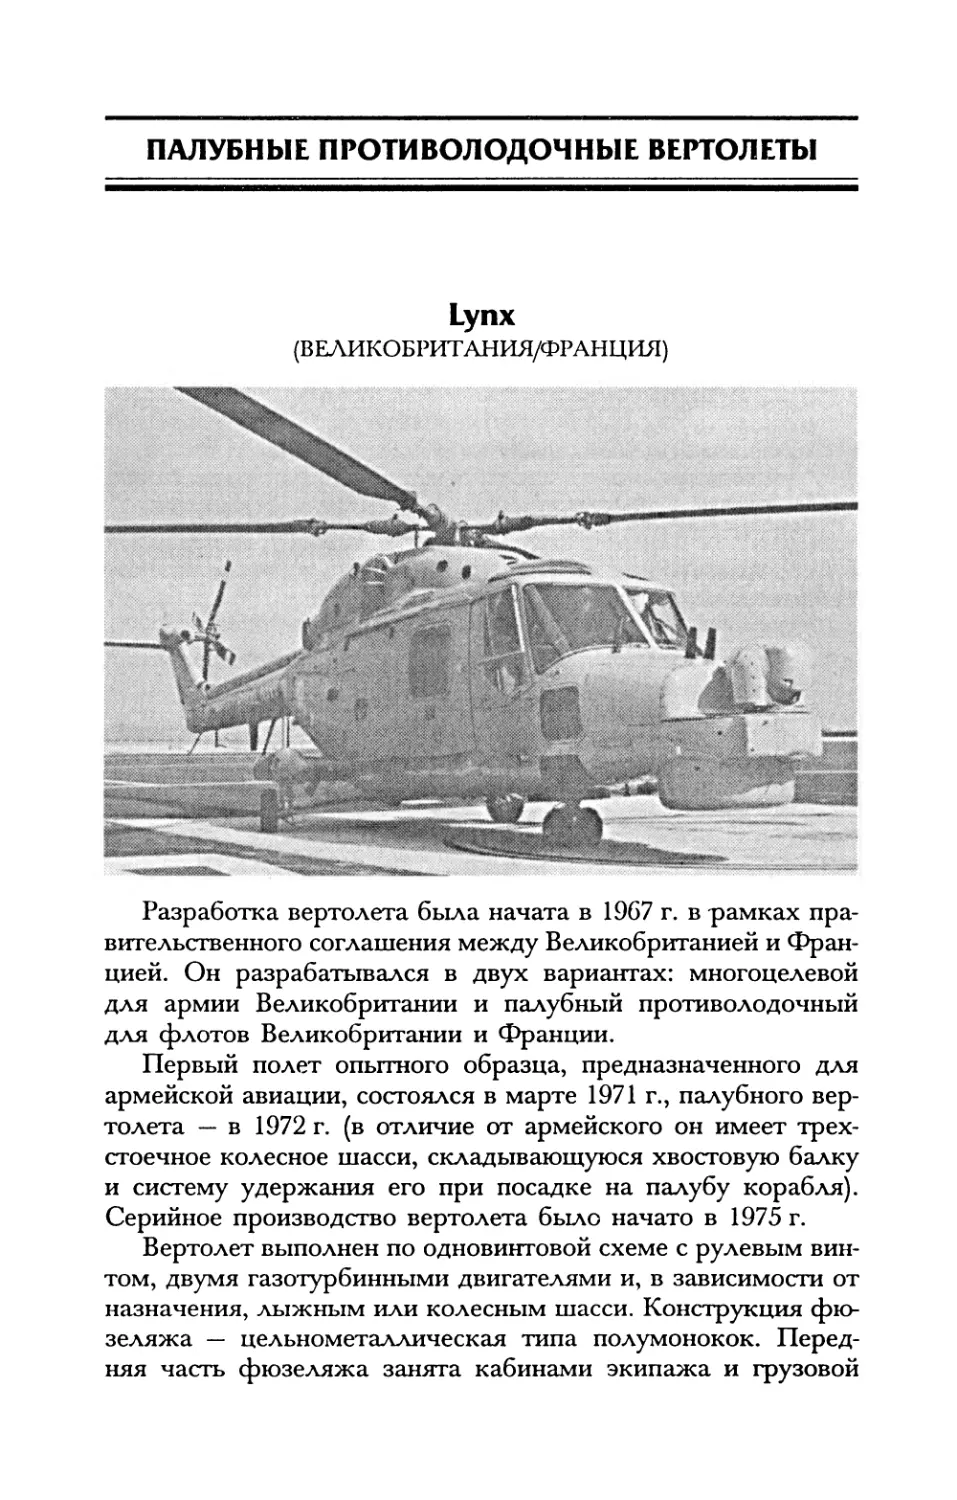 Палубные противолодочные вертолеты